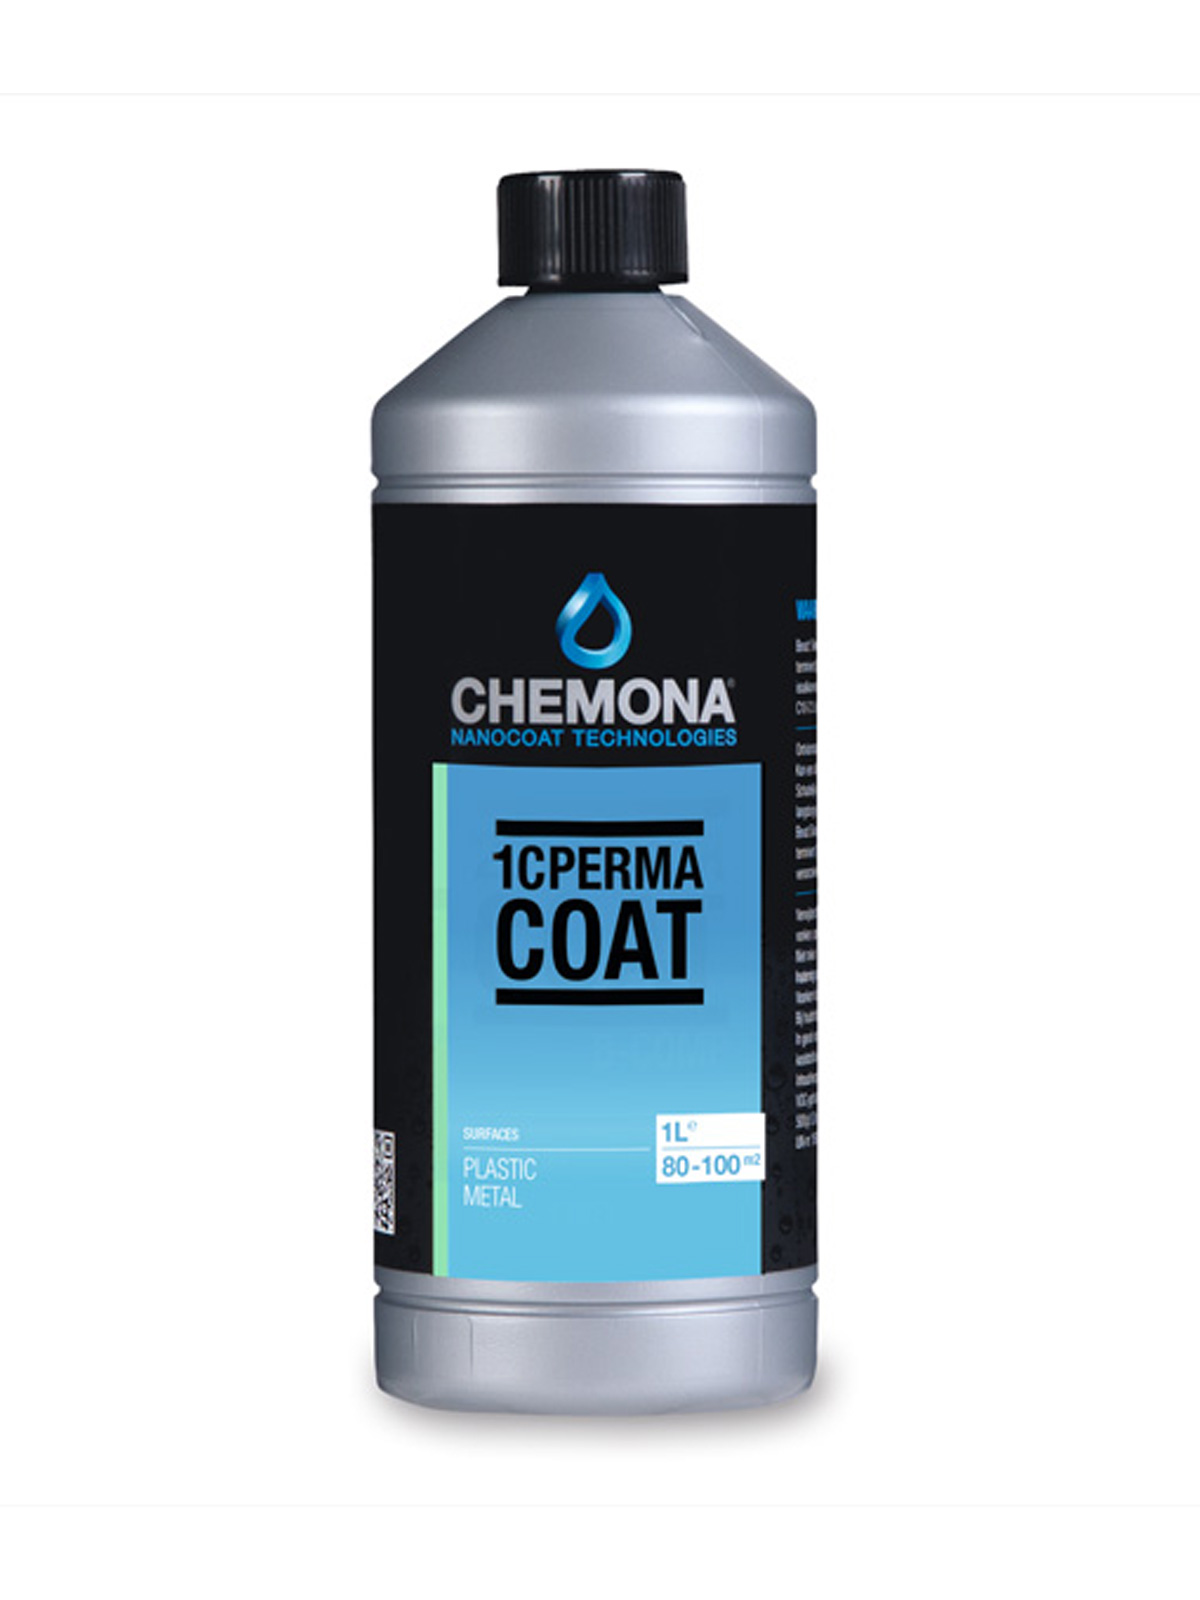 Chemona 1C Perma Coat Gloss